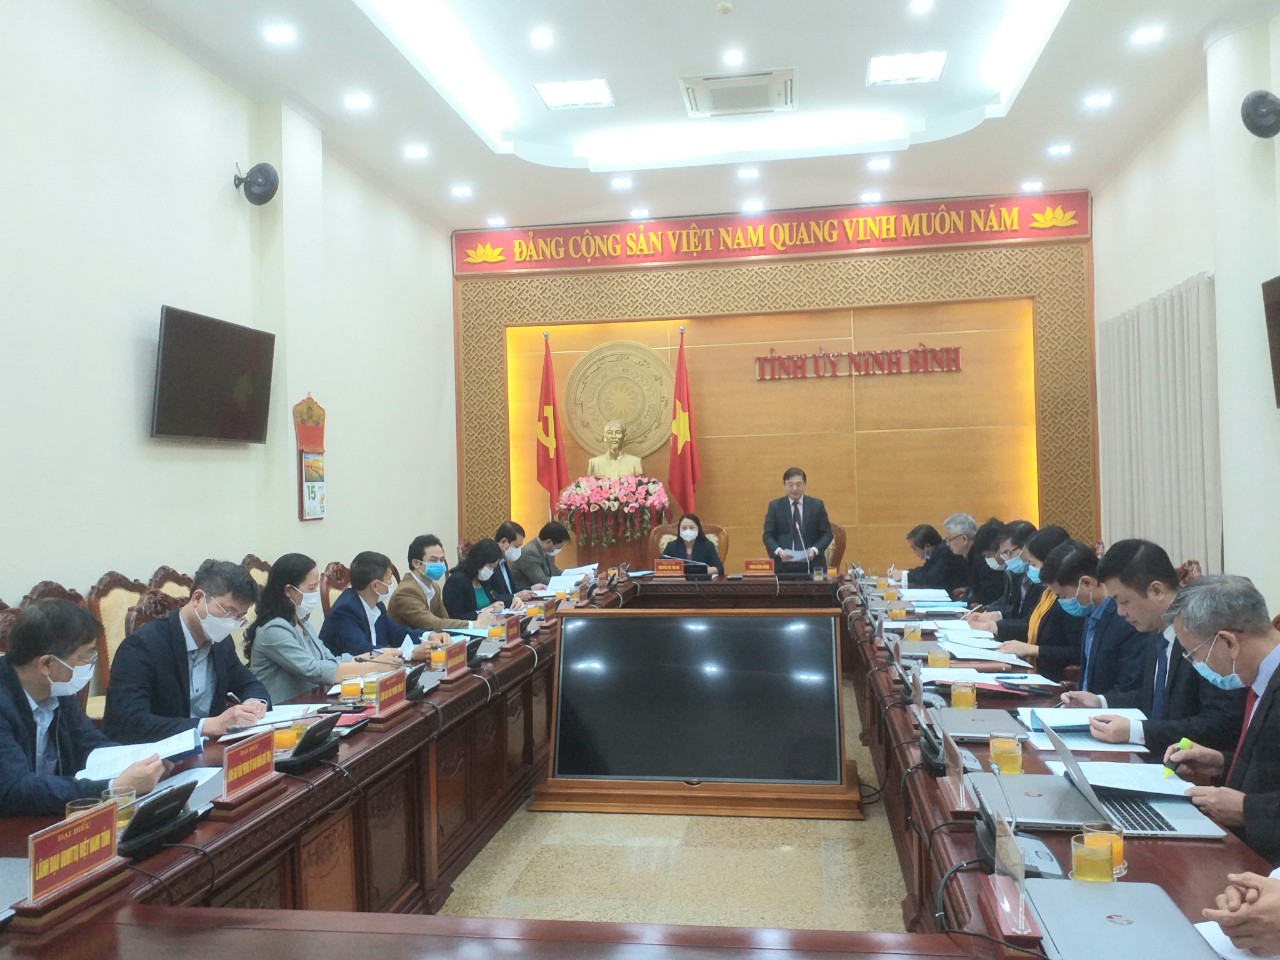 Đoàn công tác Đảng đoàn Liên hiệp các Hội Khoa học và Kỹ thuật Việt Nam làm việc tại Ninh Bình